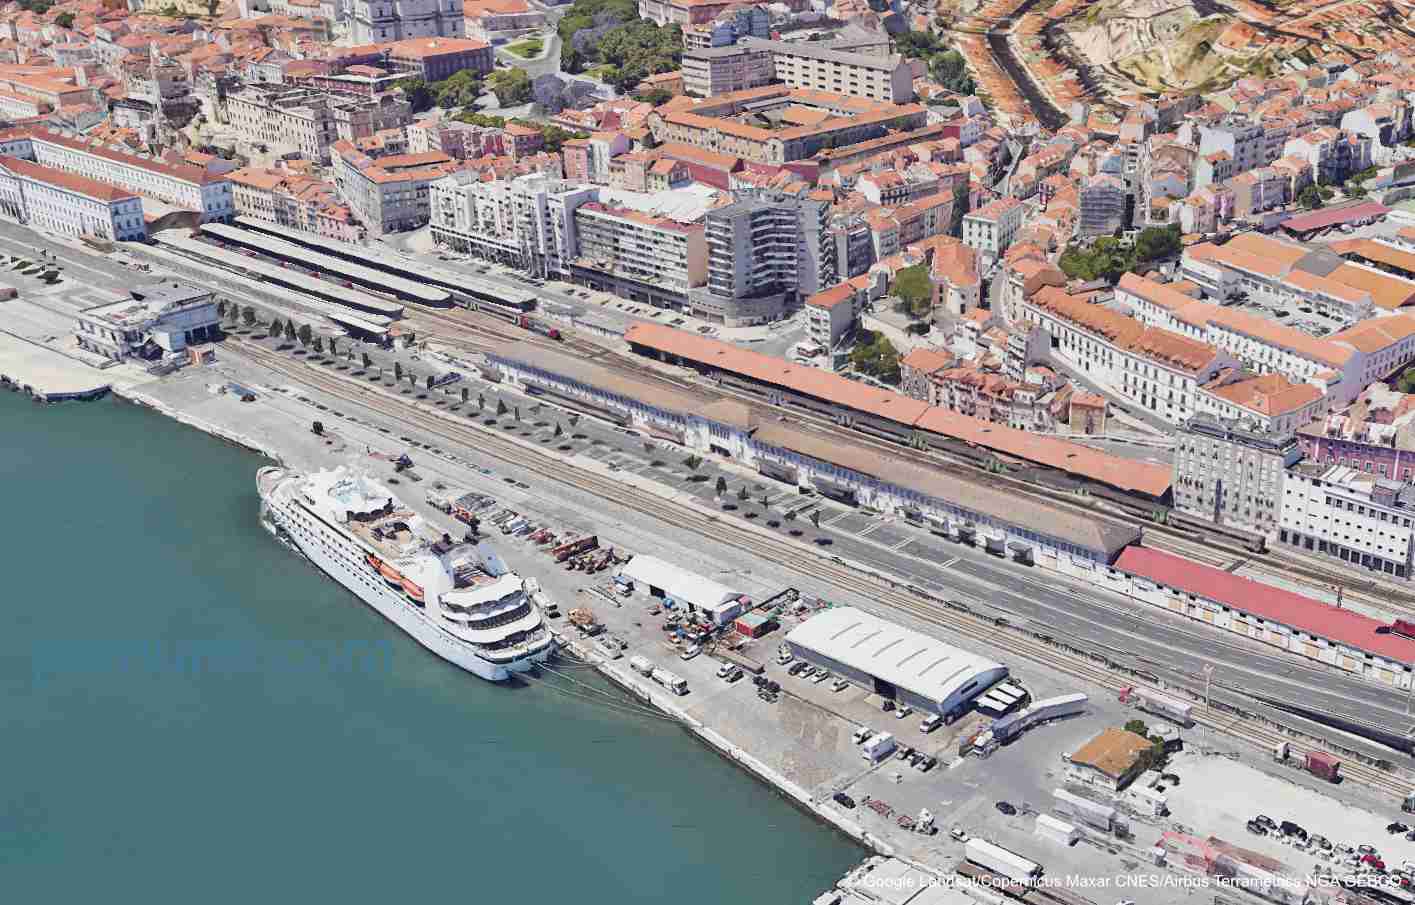 Where Do Cruise Ships Dock In Lisbon?